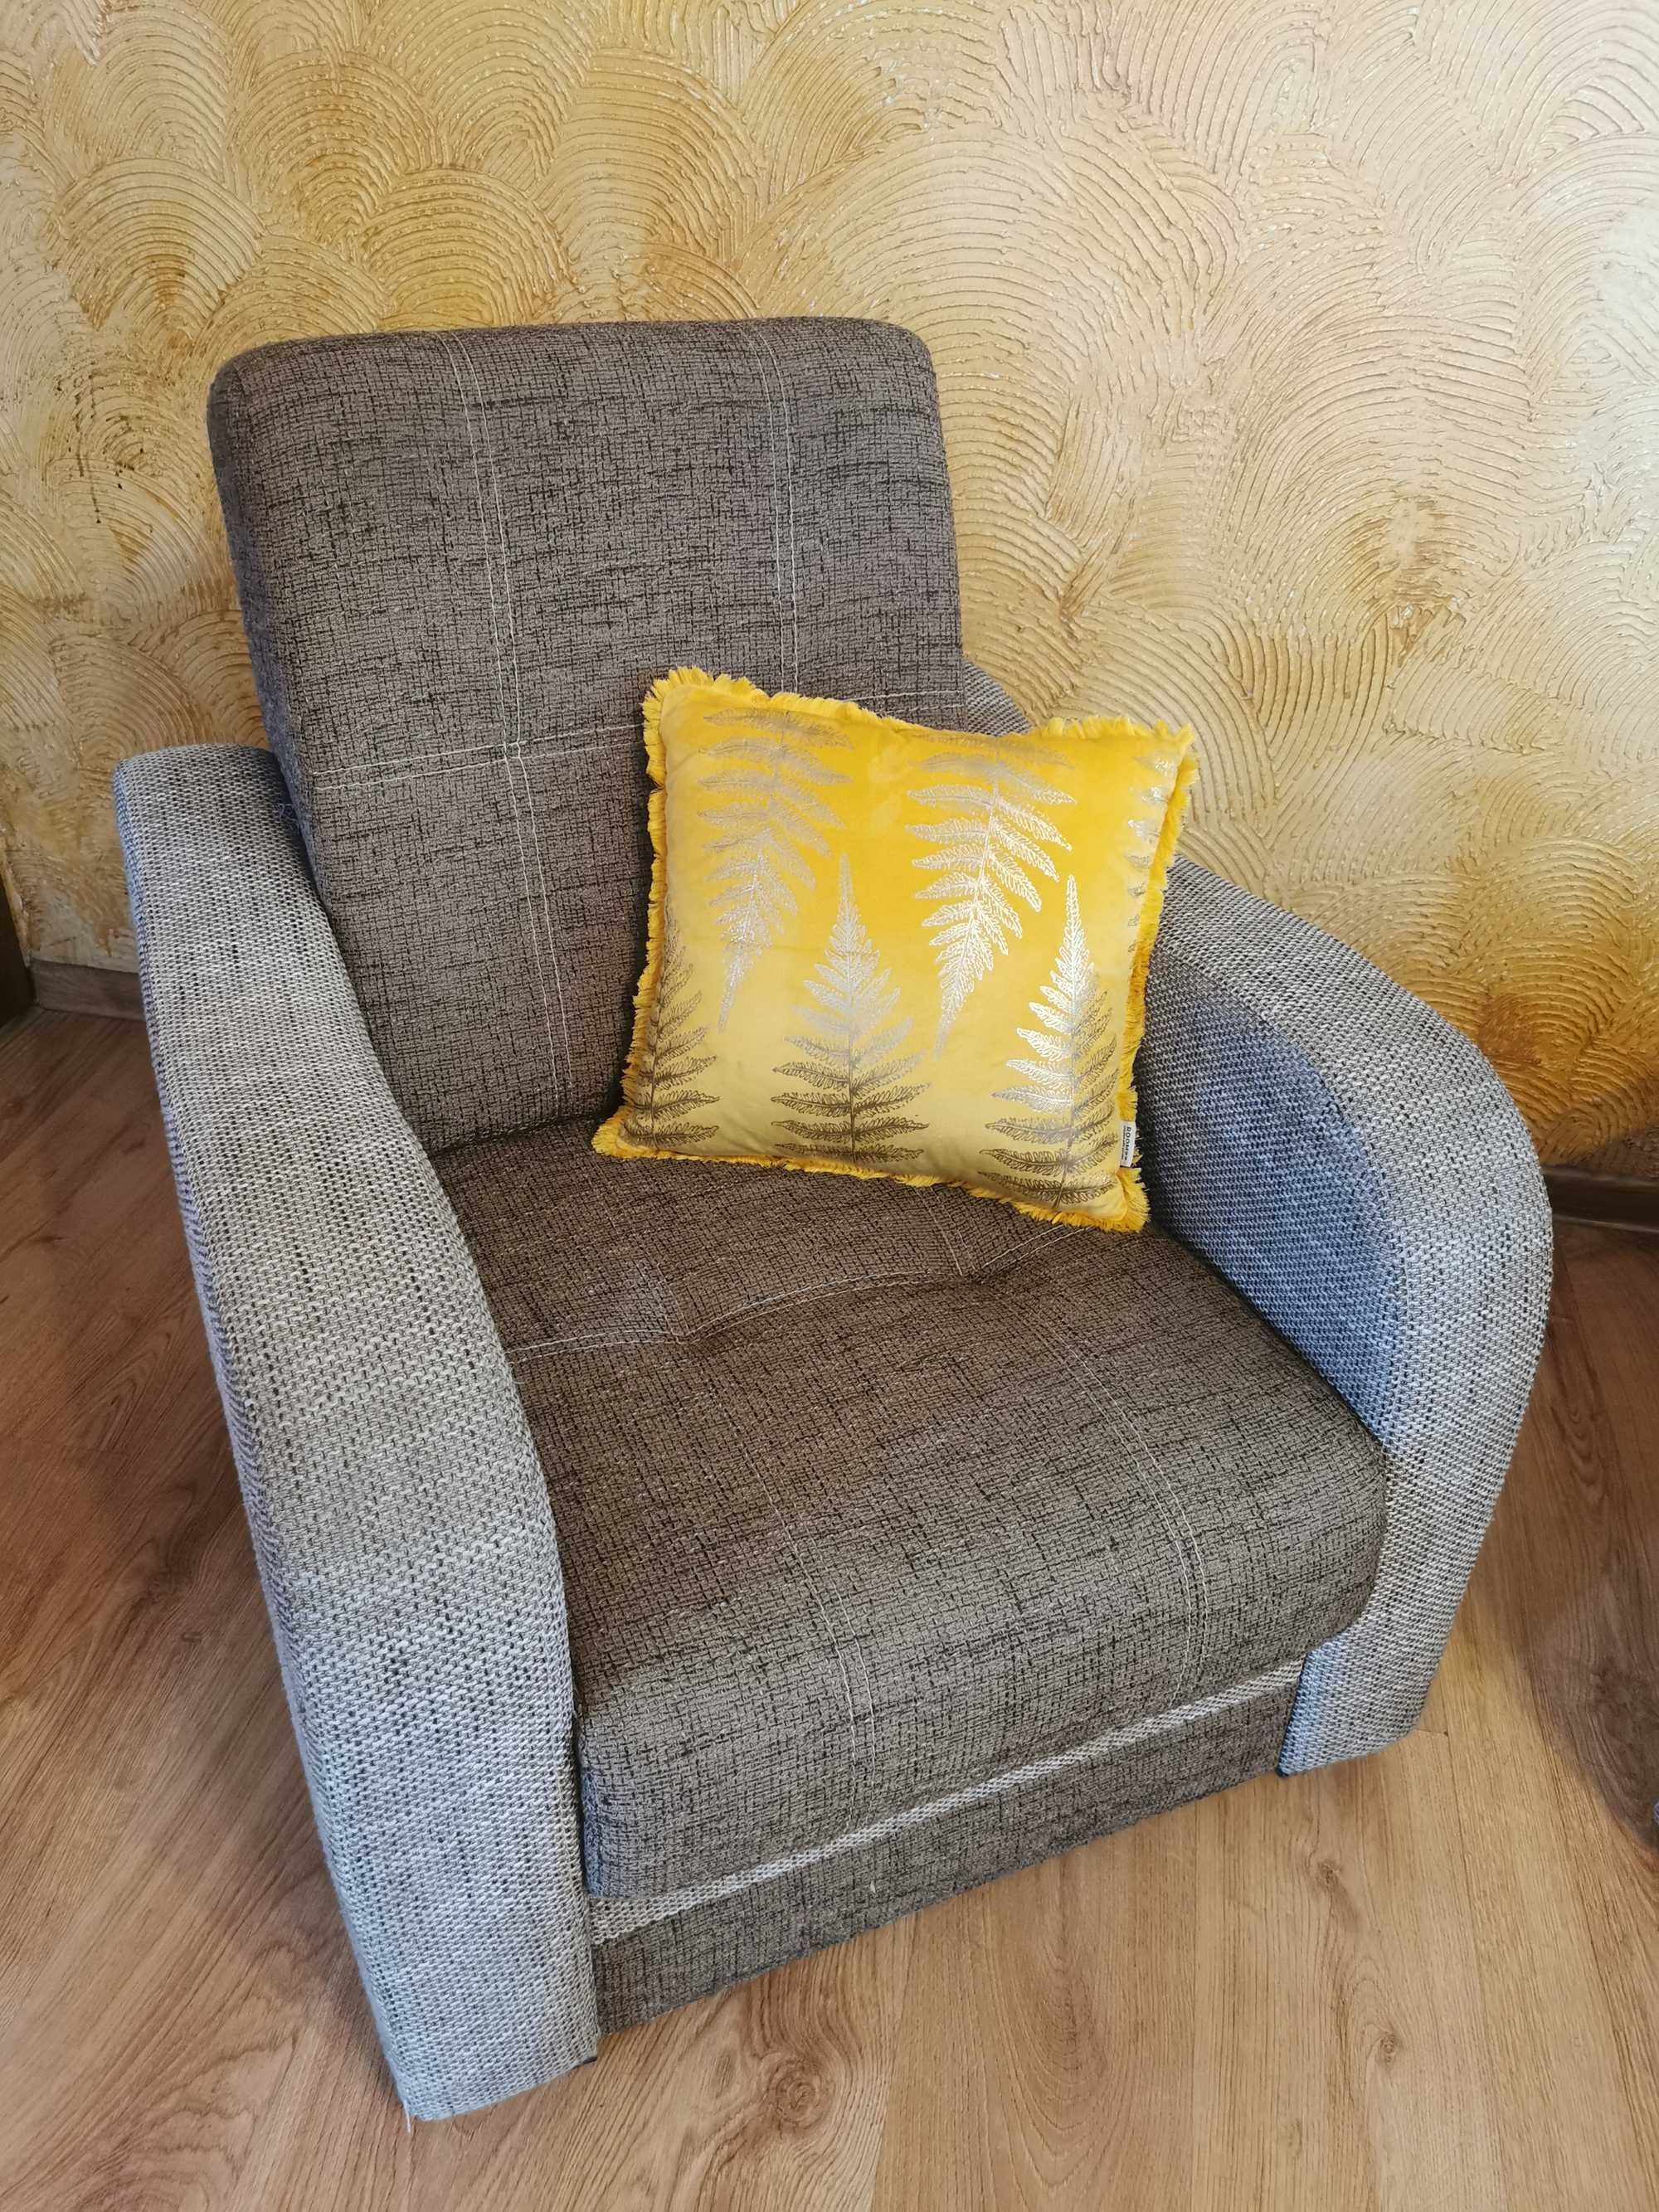 Zestaw wypoczynkowy kanapa + fotele wersalka wypoczynek do salonu